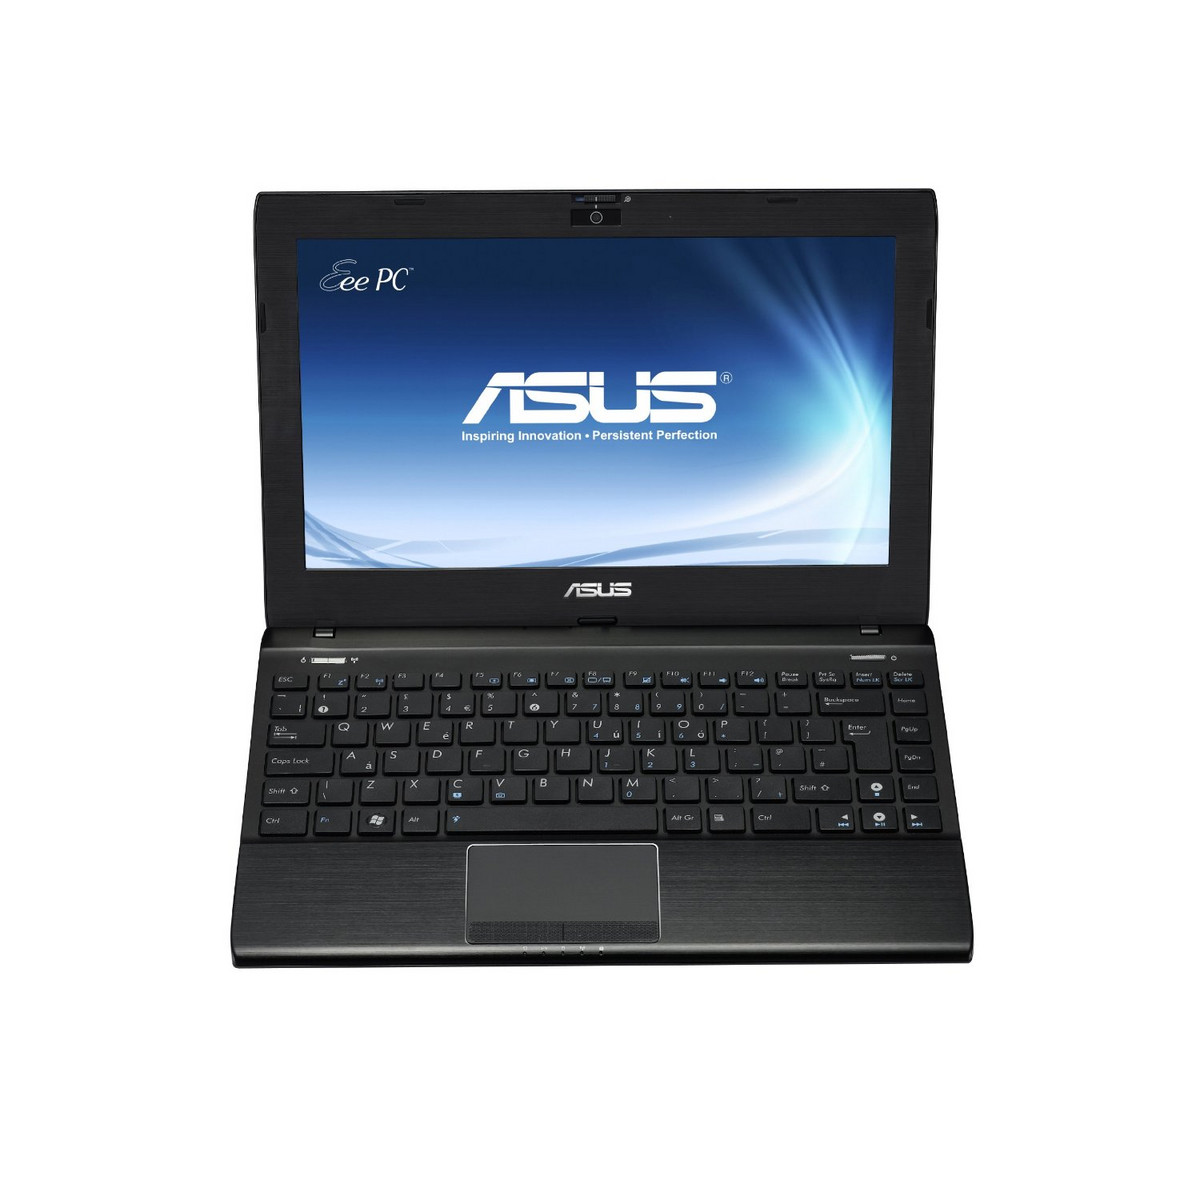 Asus Eee PC 1225B-BLK033M - Notebookcheck.net External Reviews